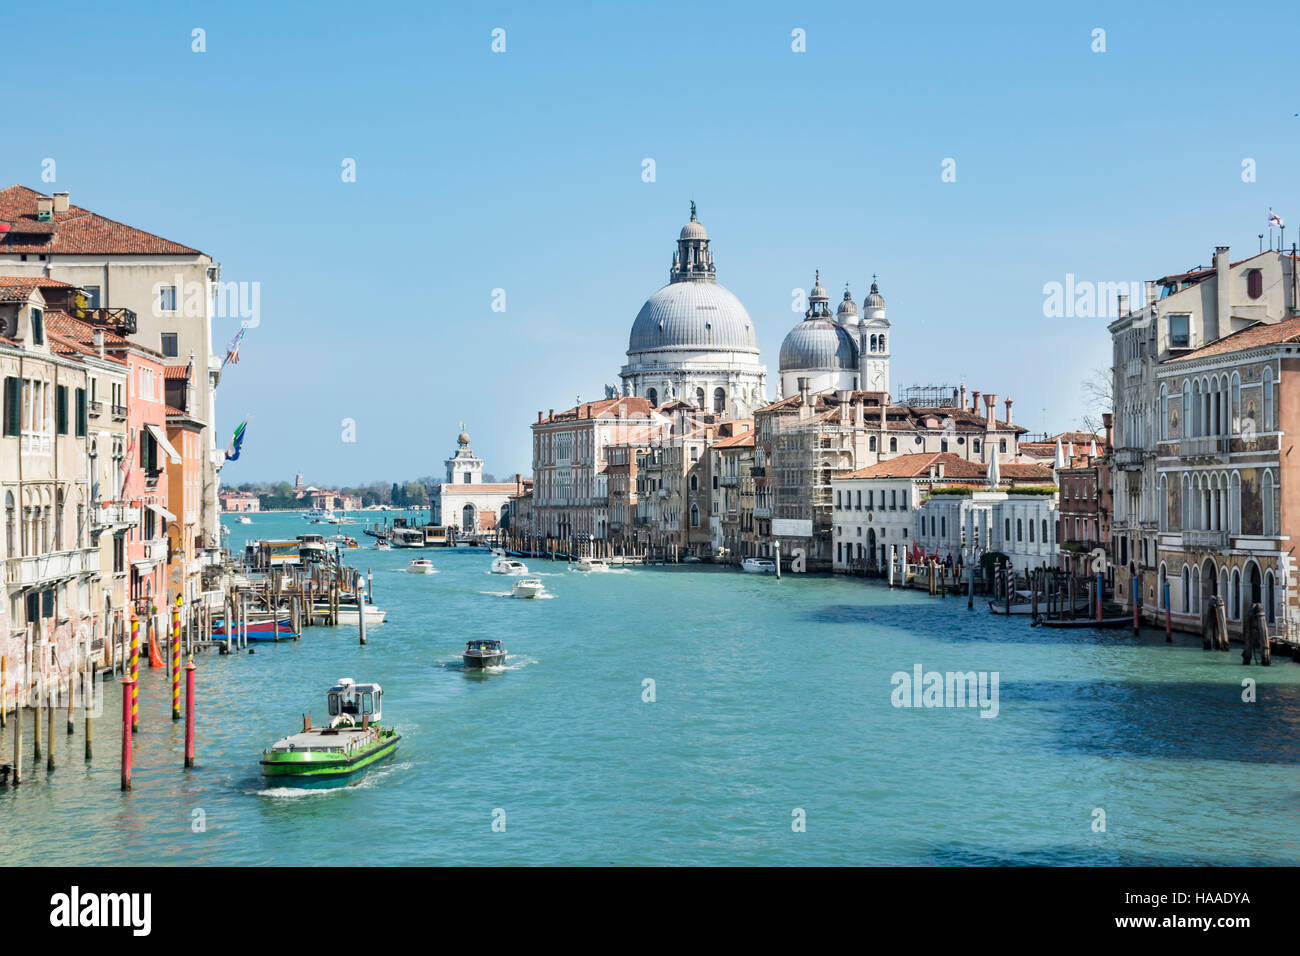 Grand canal and San Giorgio Maggiore, Venice, Italy, Europe Stock Photo